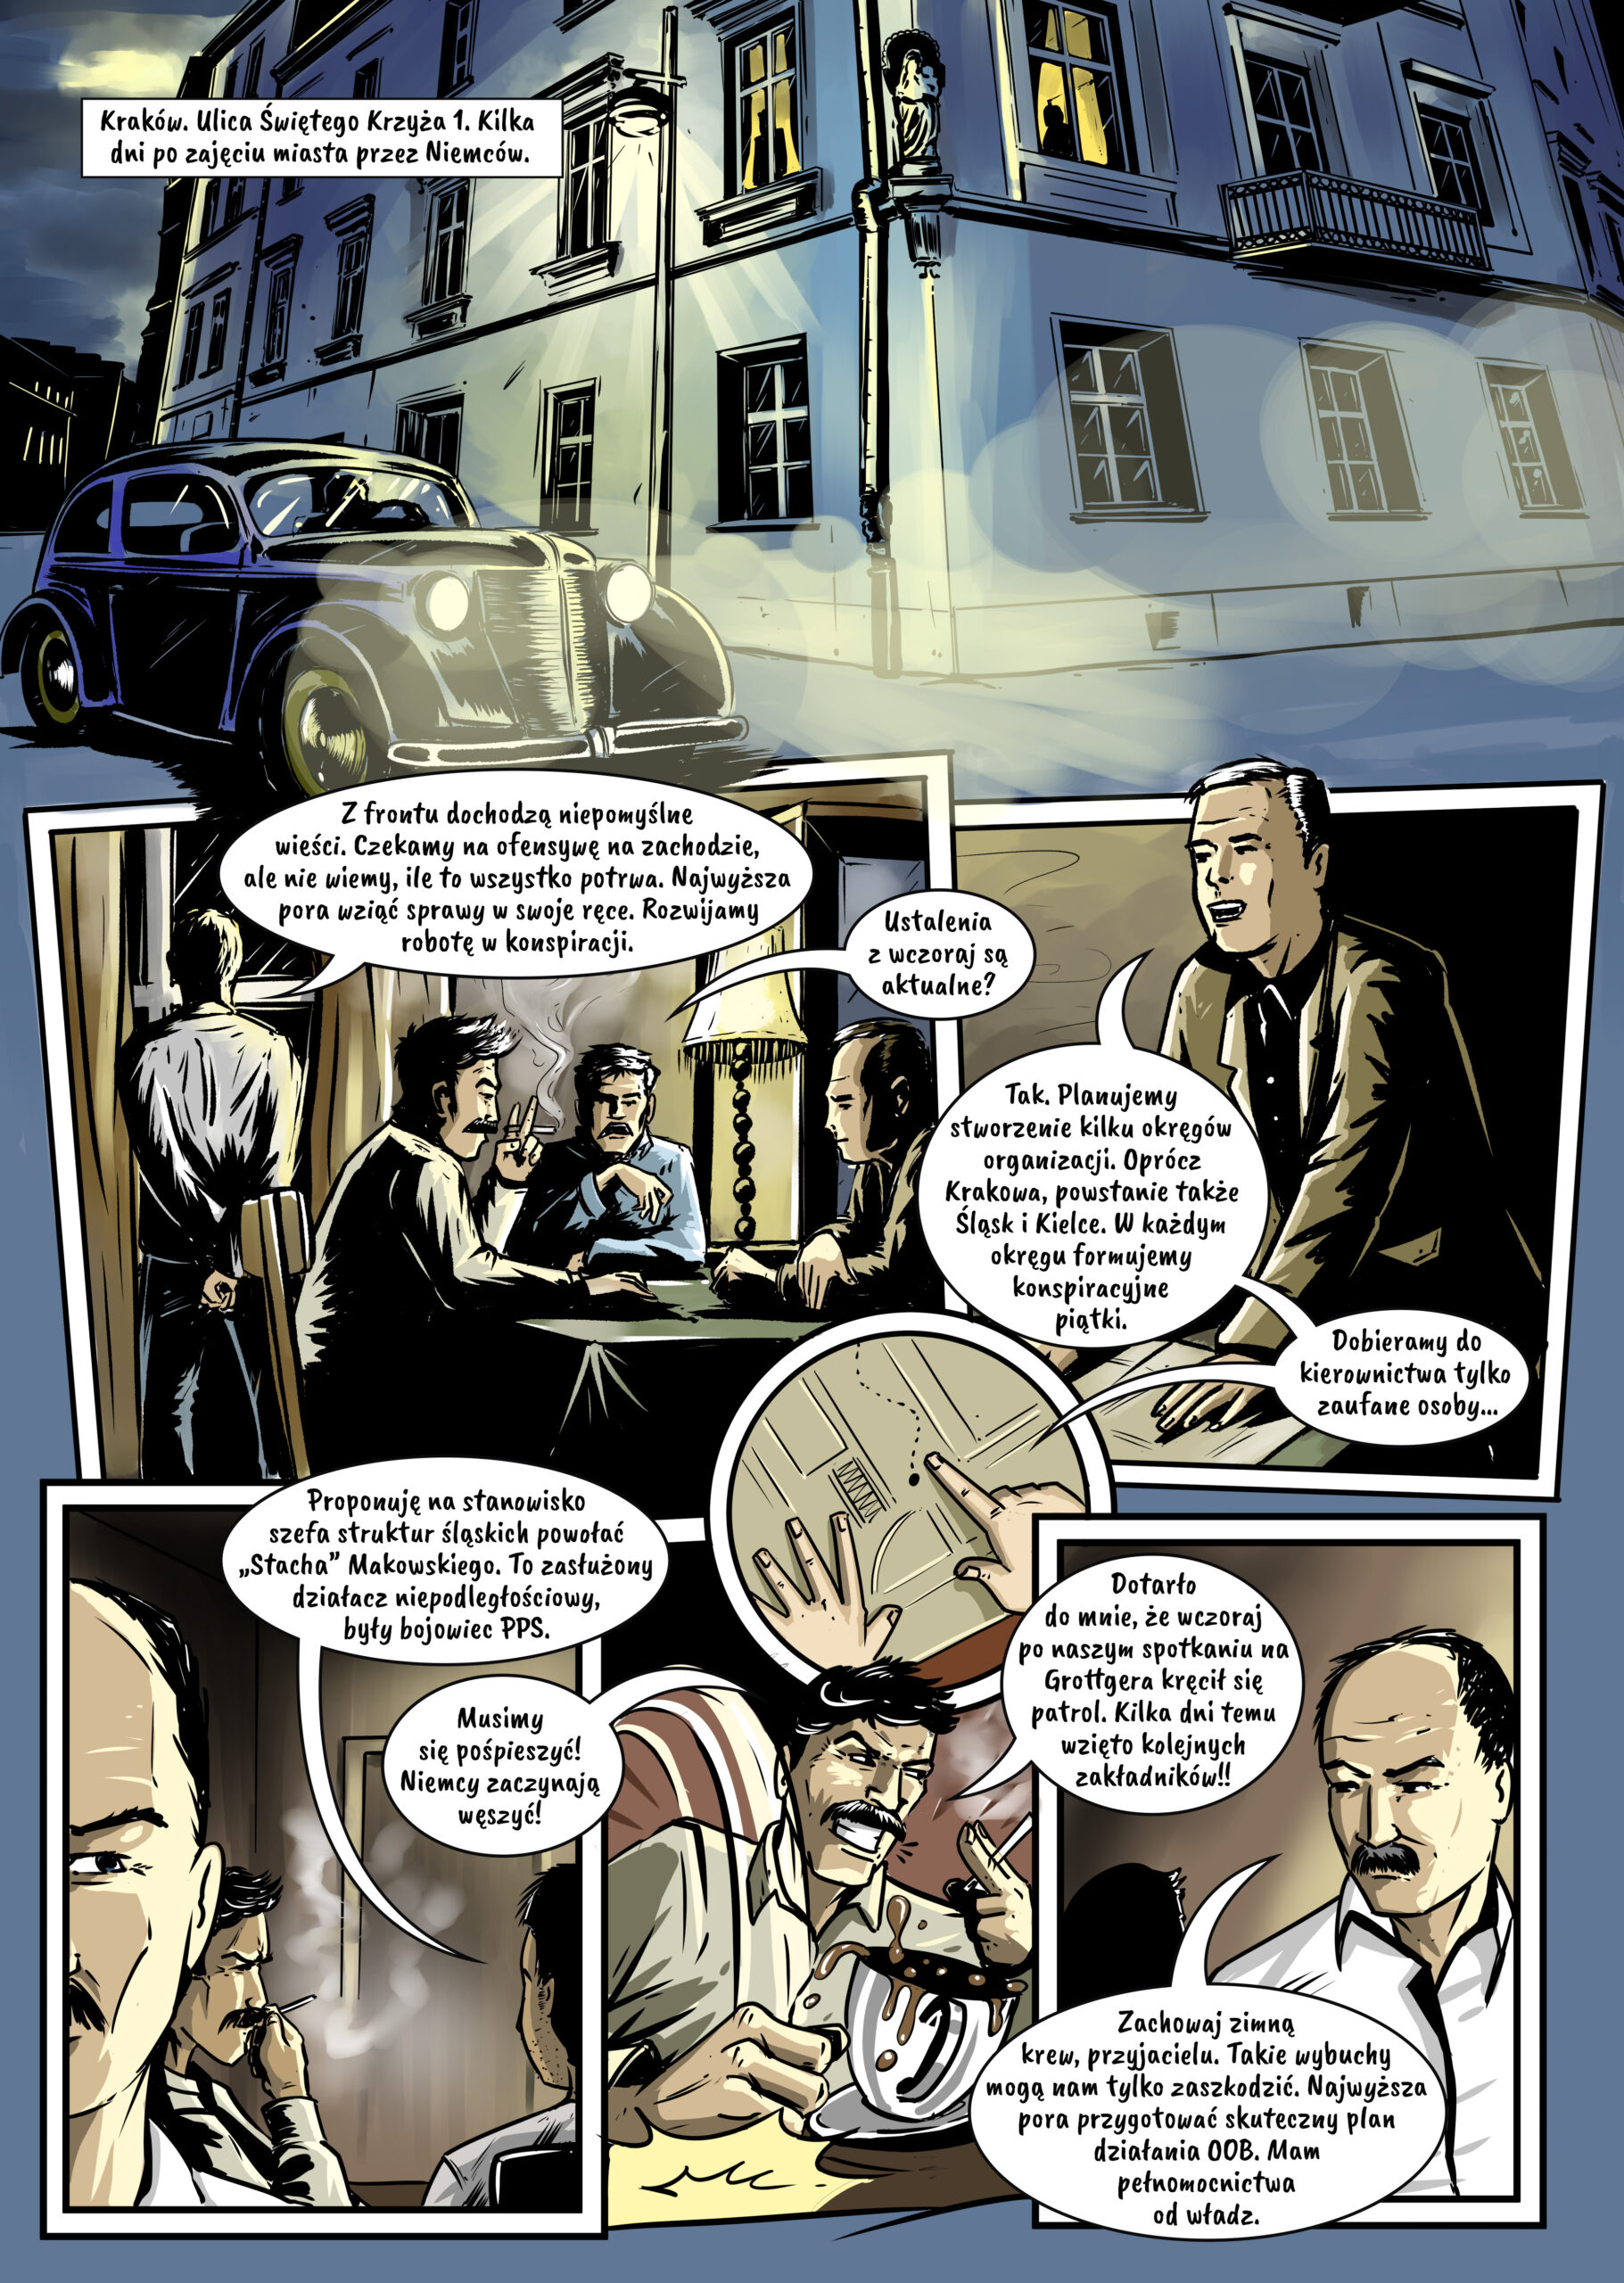 Pierwsza strona komiksu historycznego o początkach krakowskiej konspiracji